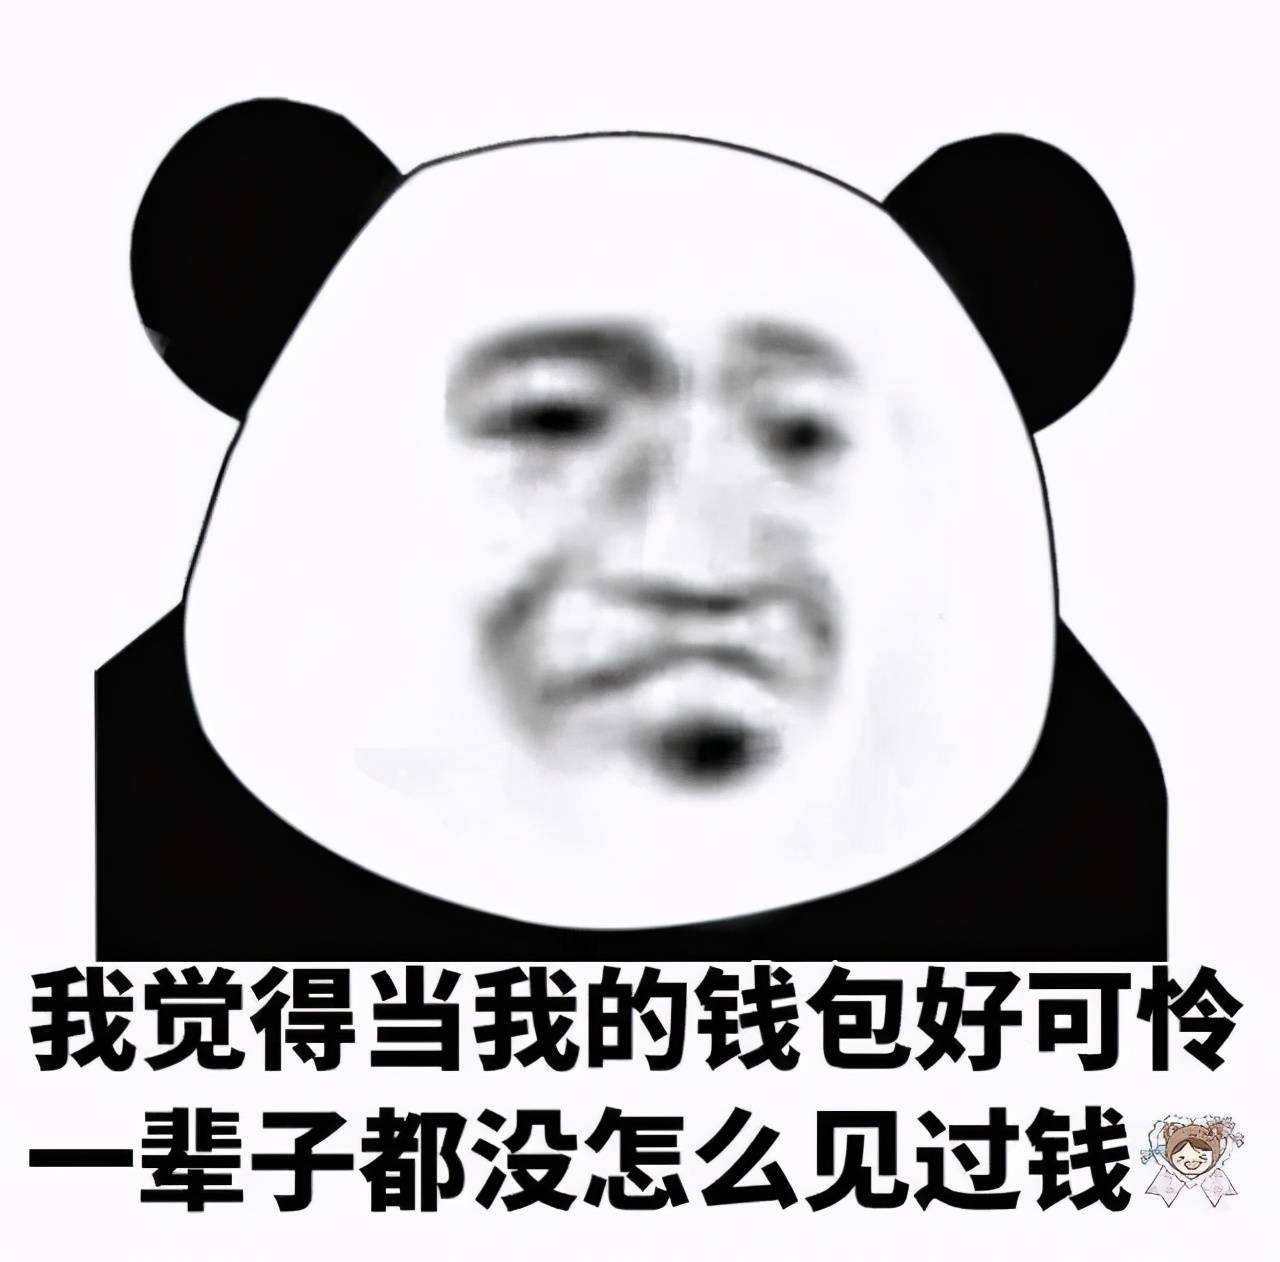 熊猫头表情包:网恋选我,我超甜,骗人,骗感情,还骗钱